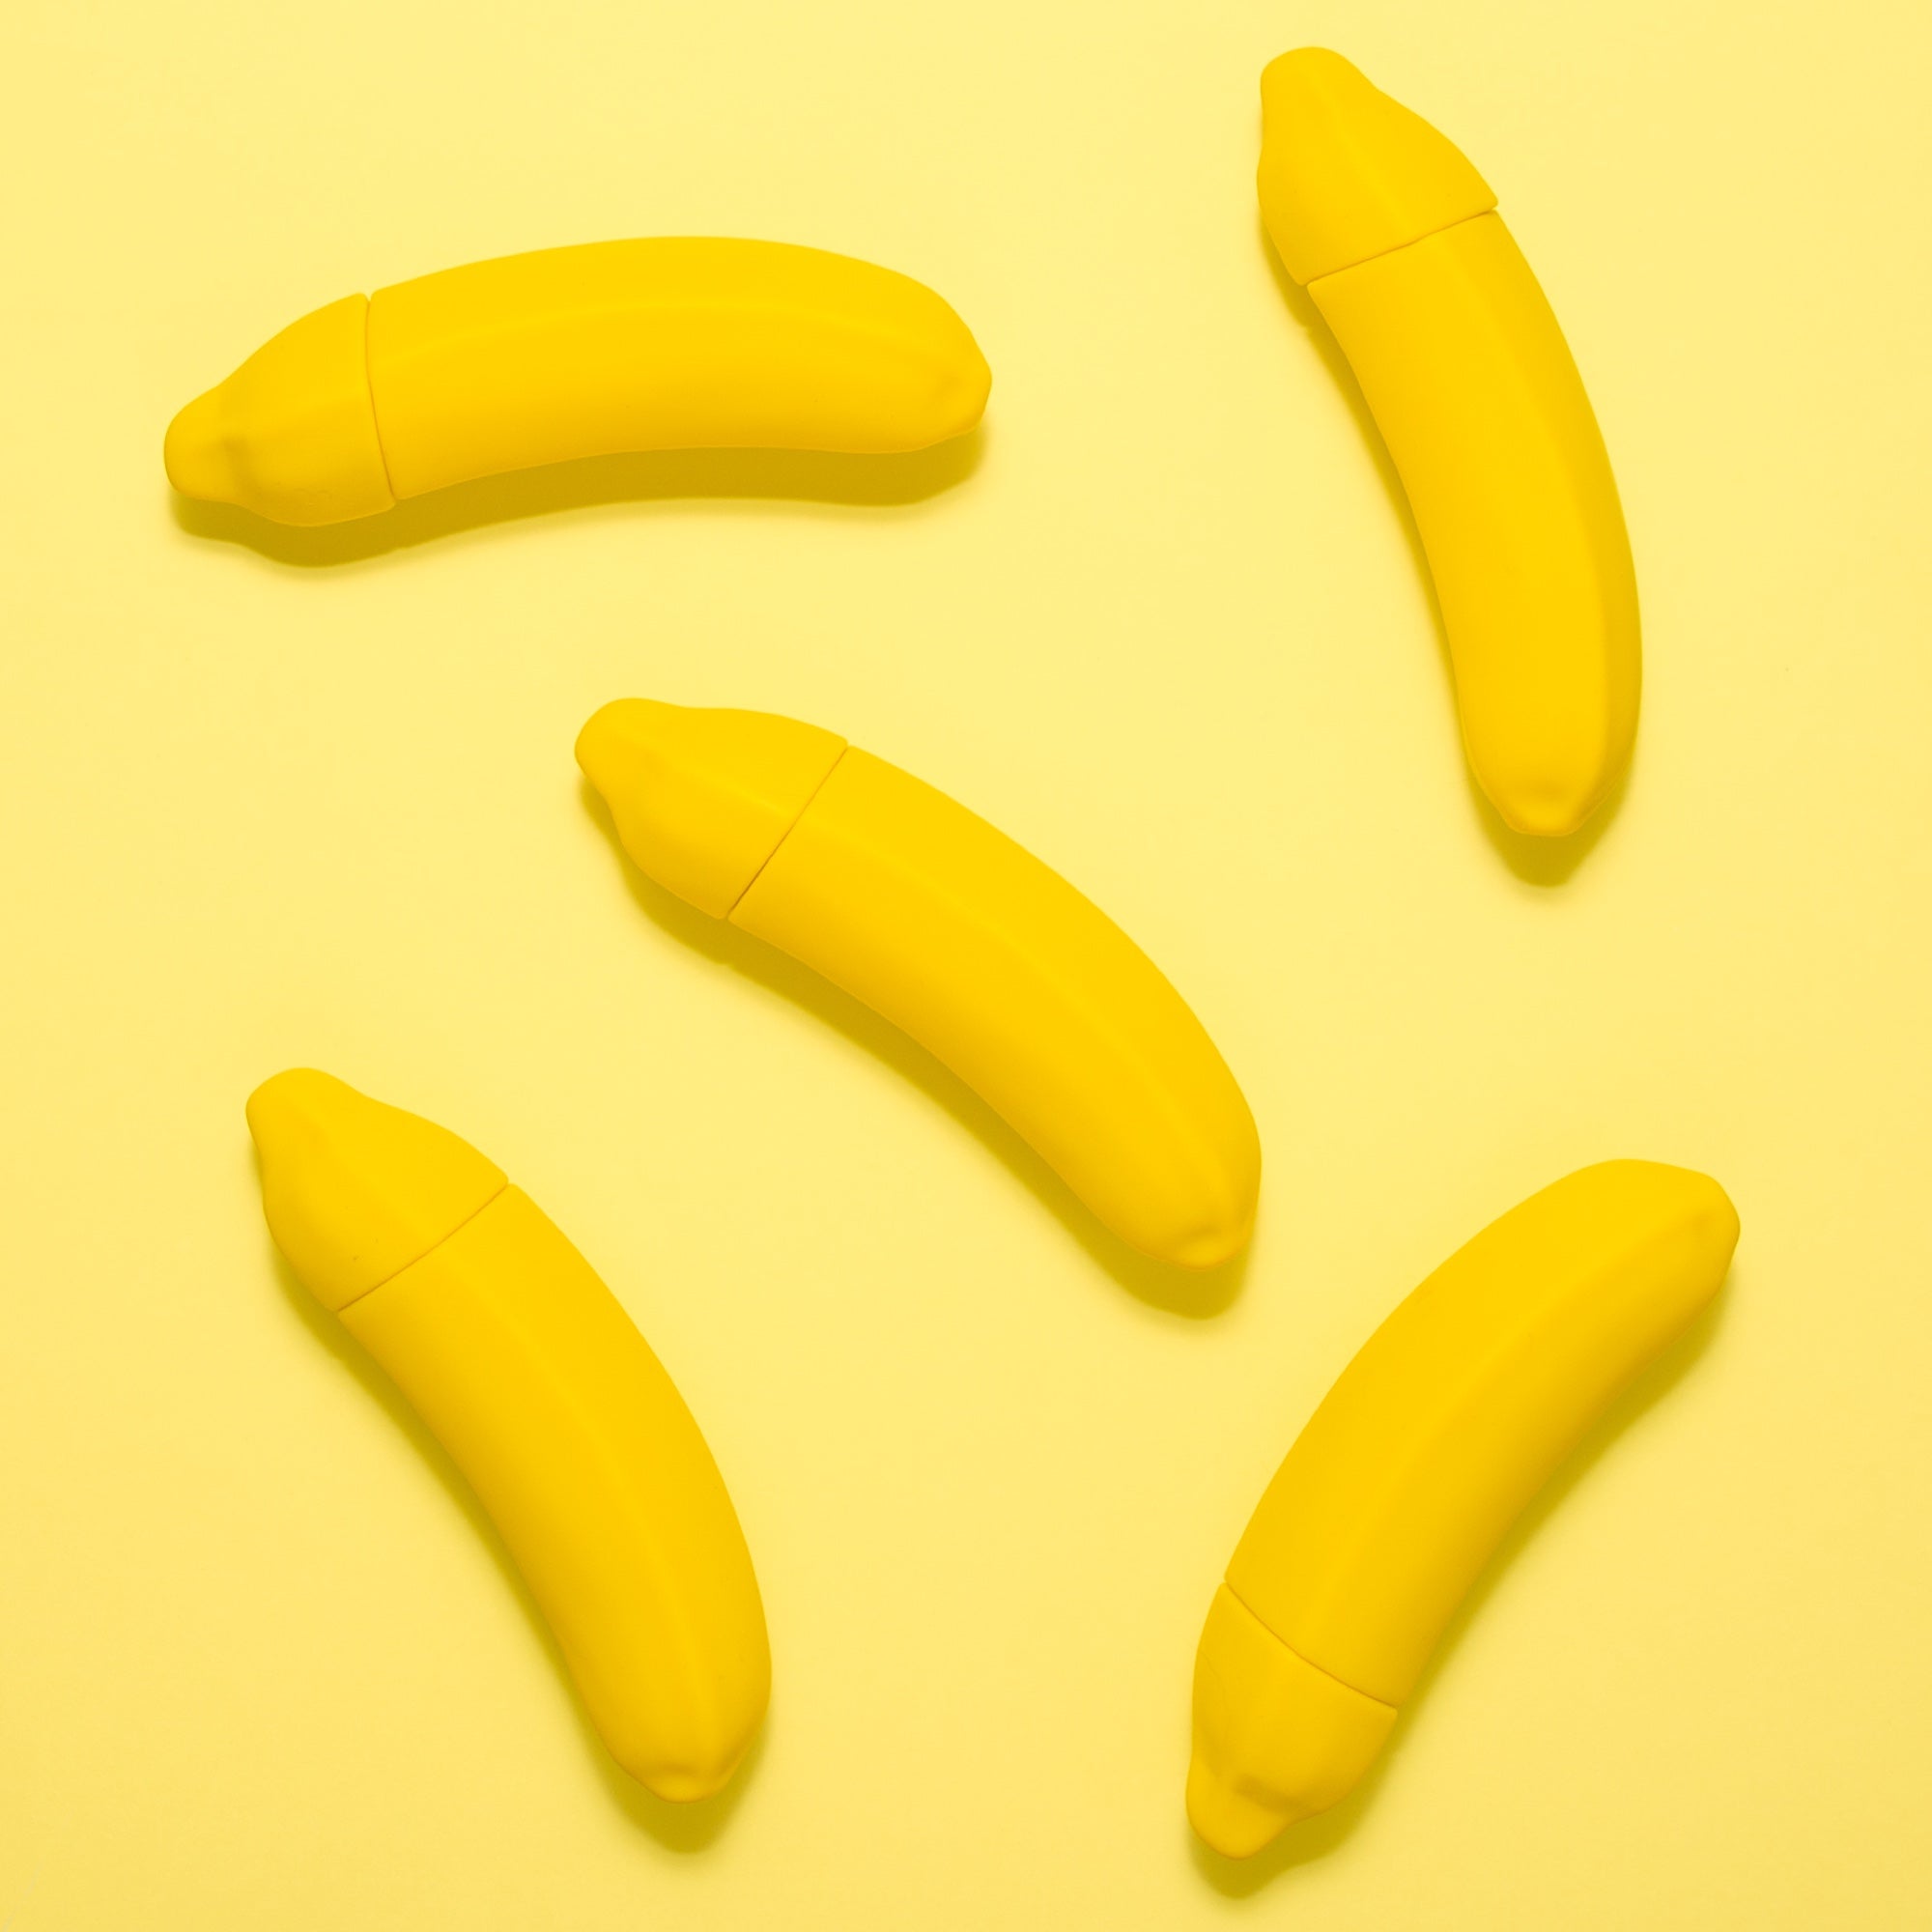 Fünf Vibratoren in Form einer Banane liegen auf einem gelben Hintergrund. Produktfotos sind wichtig, um Sexspielzeug zu verkaufen.